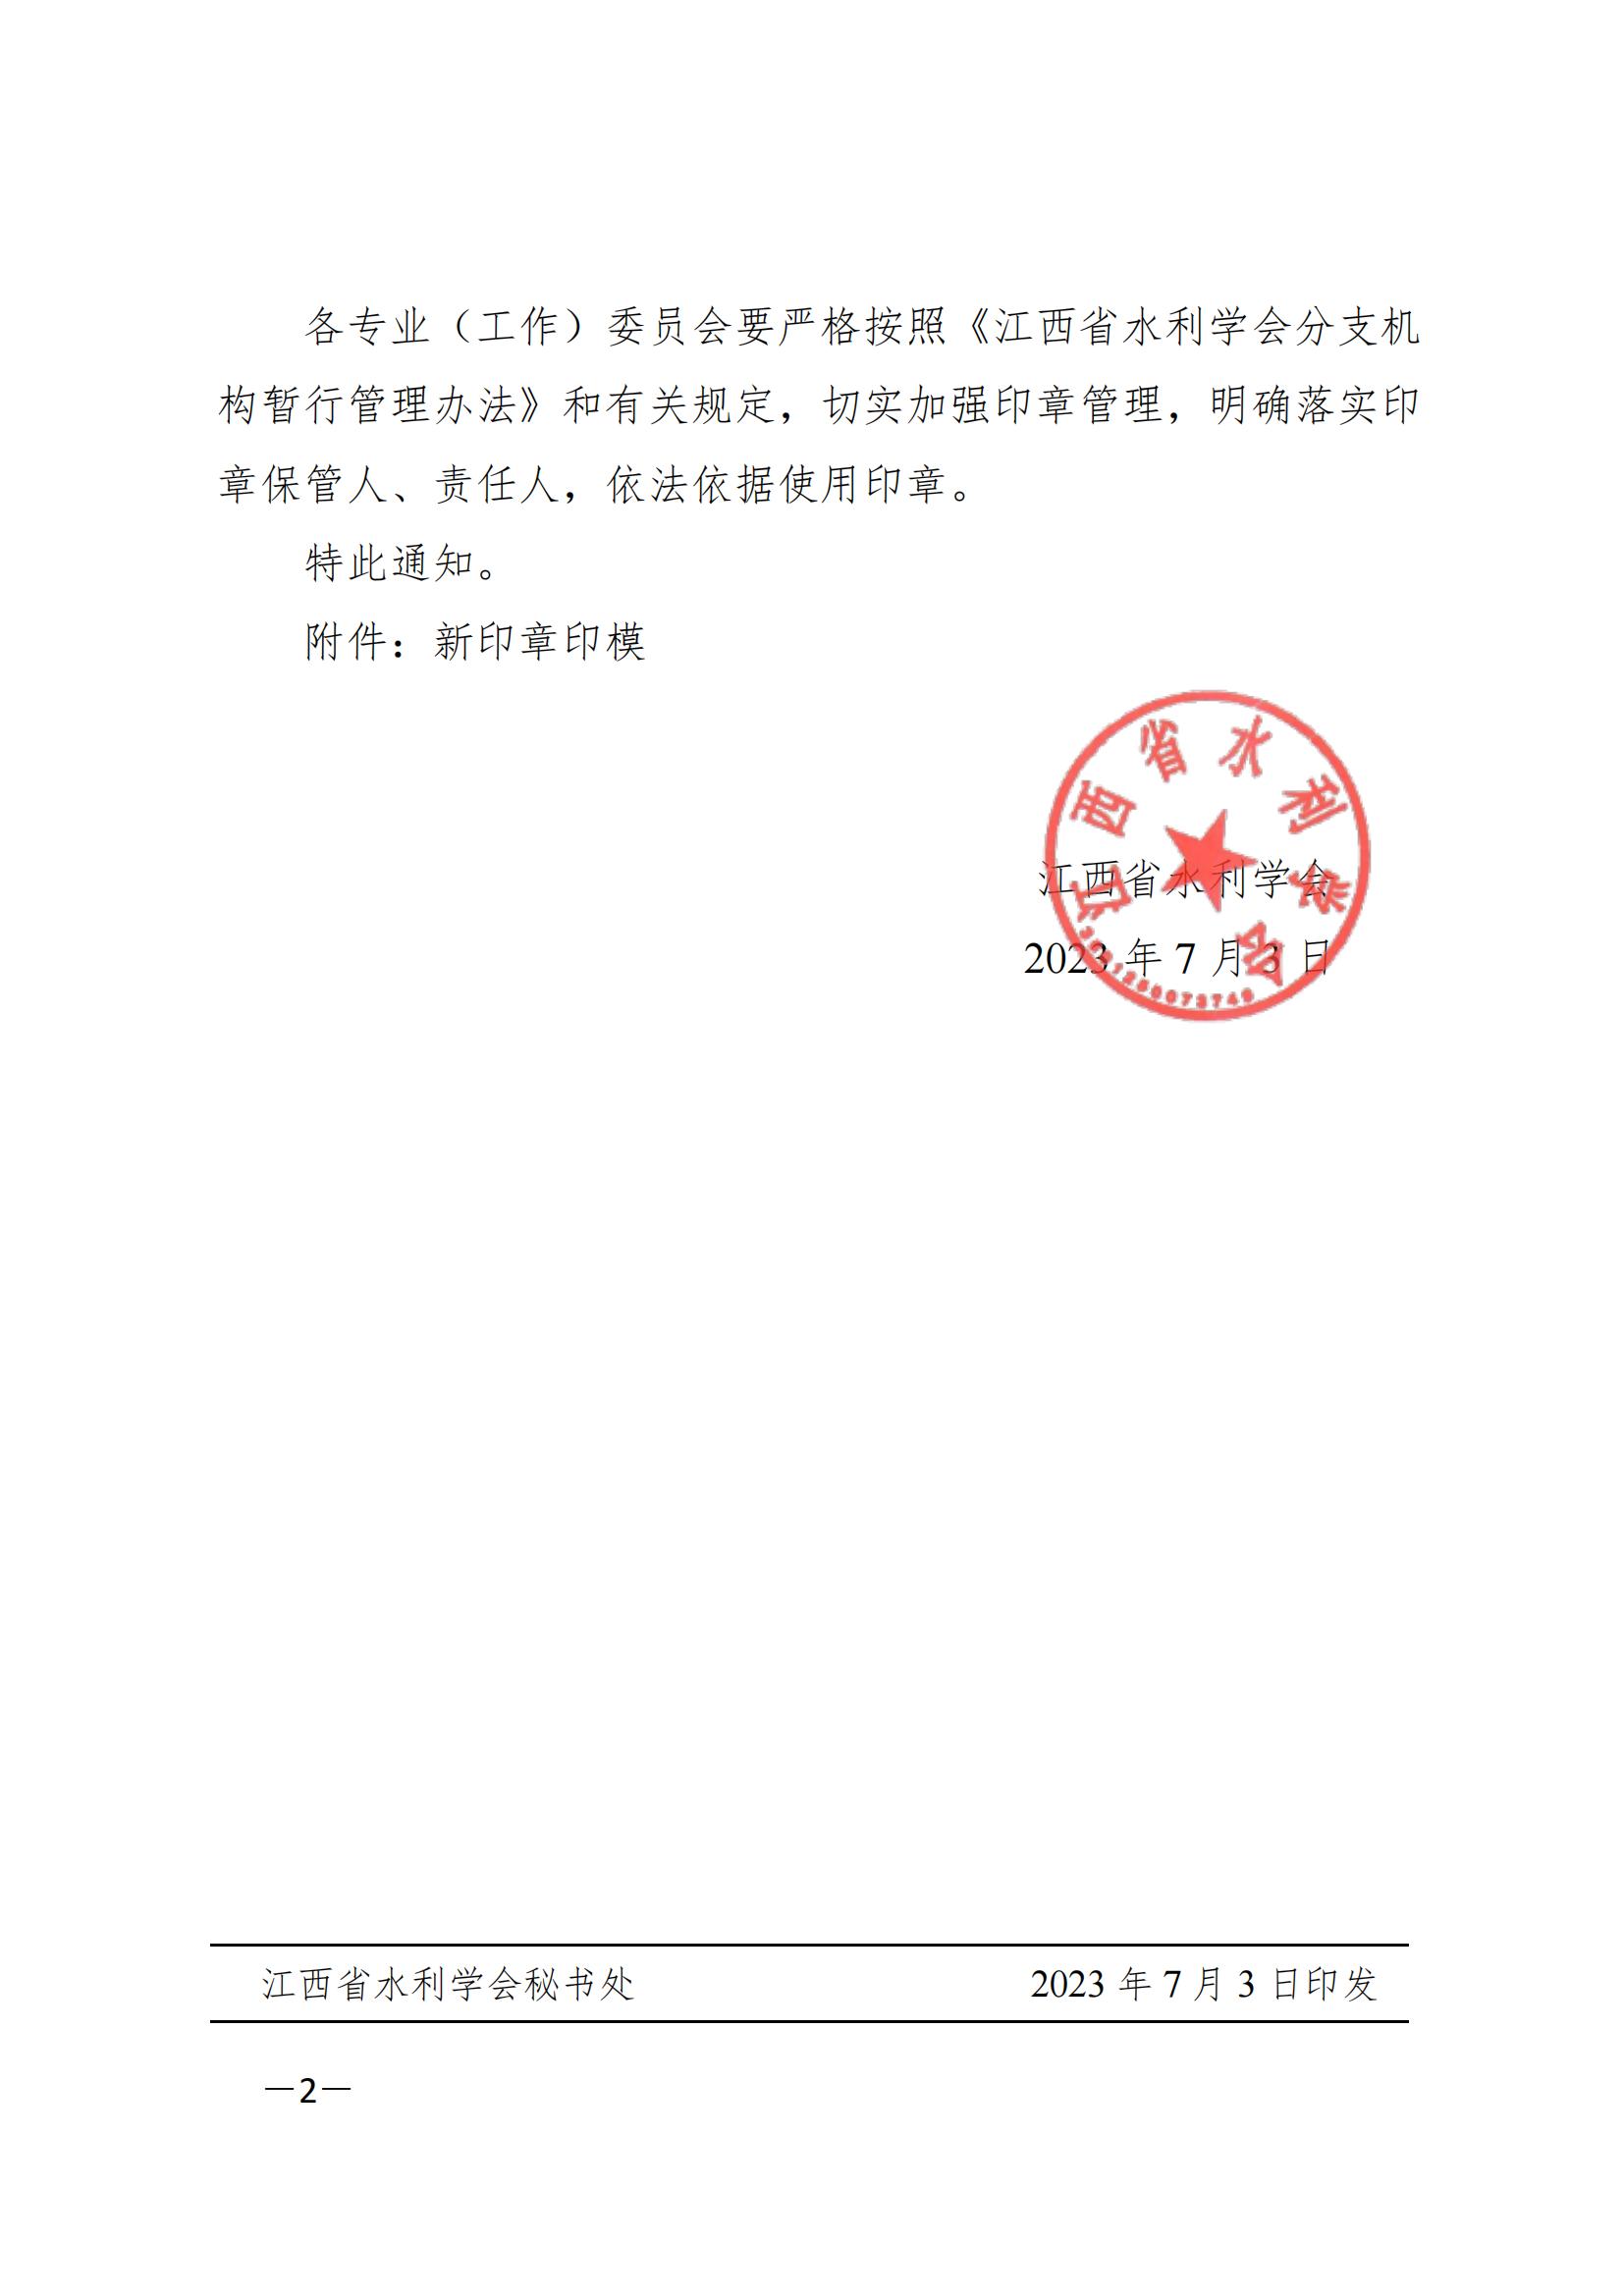 关于启用江西省水利学会分支机构新印章的通知_01.jpg